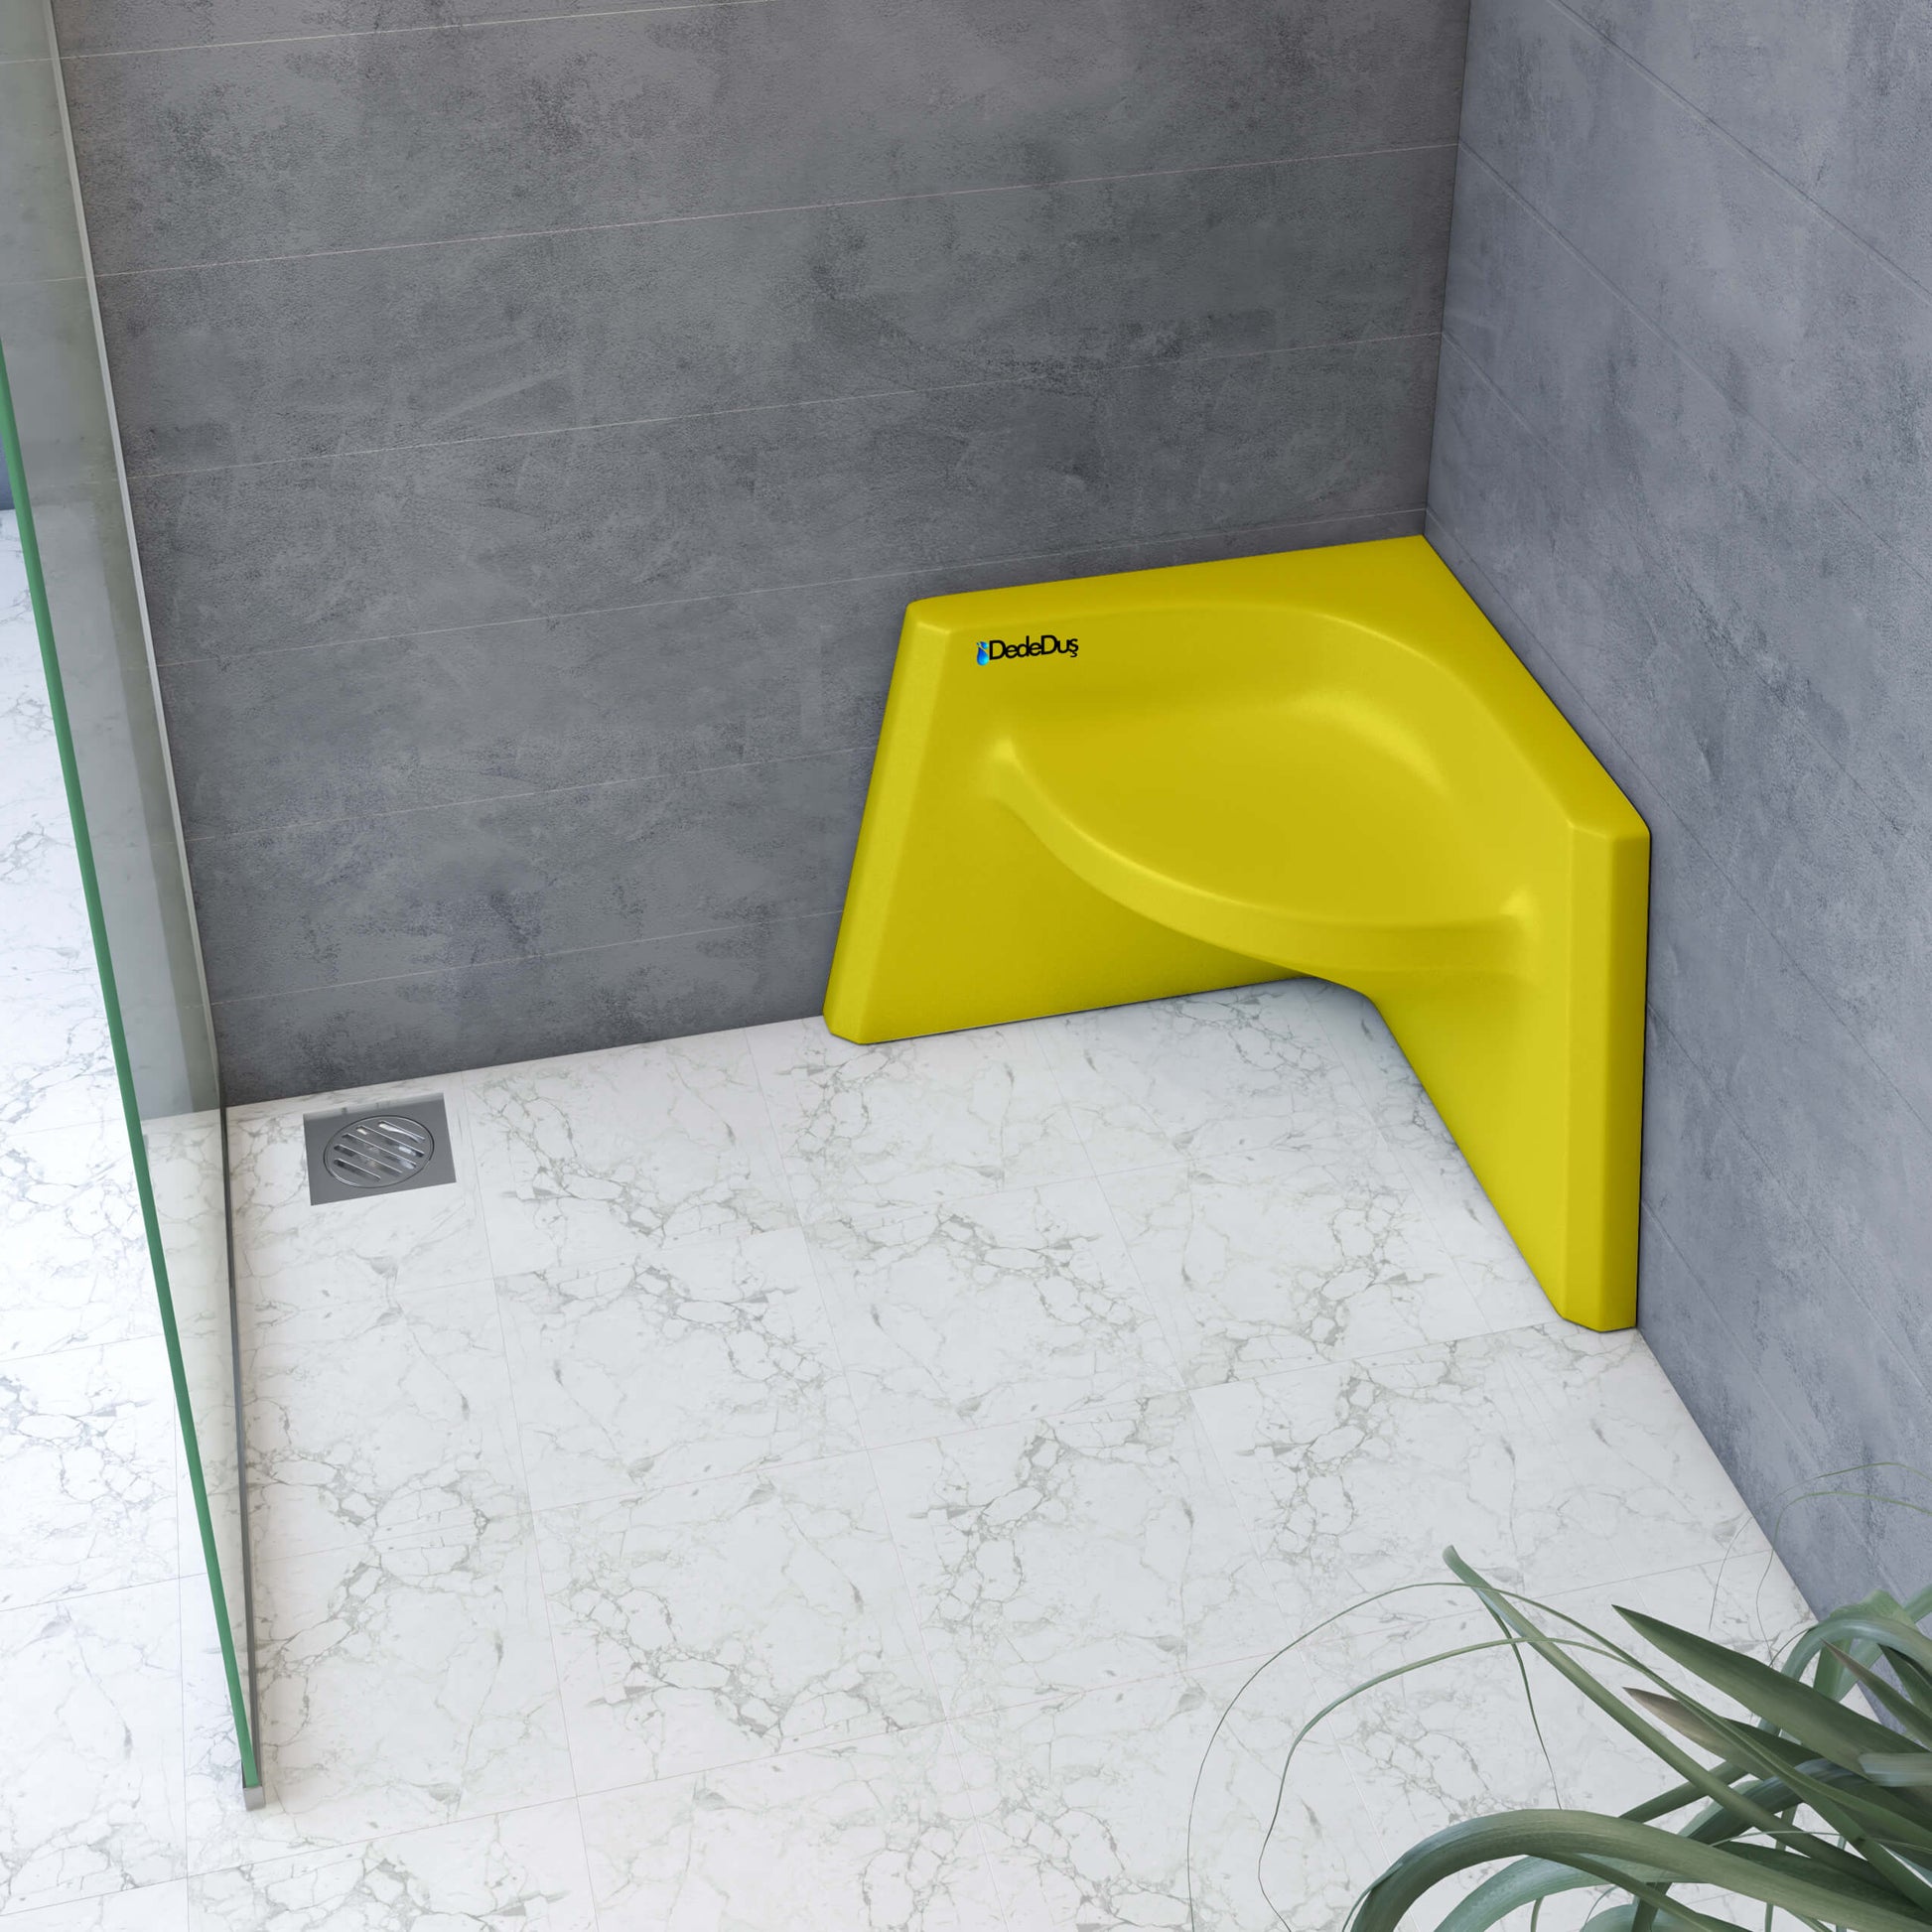 sarı renkli akrilik köşe duş taburesi, Dede Duş, Beyoğlu